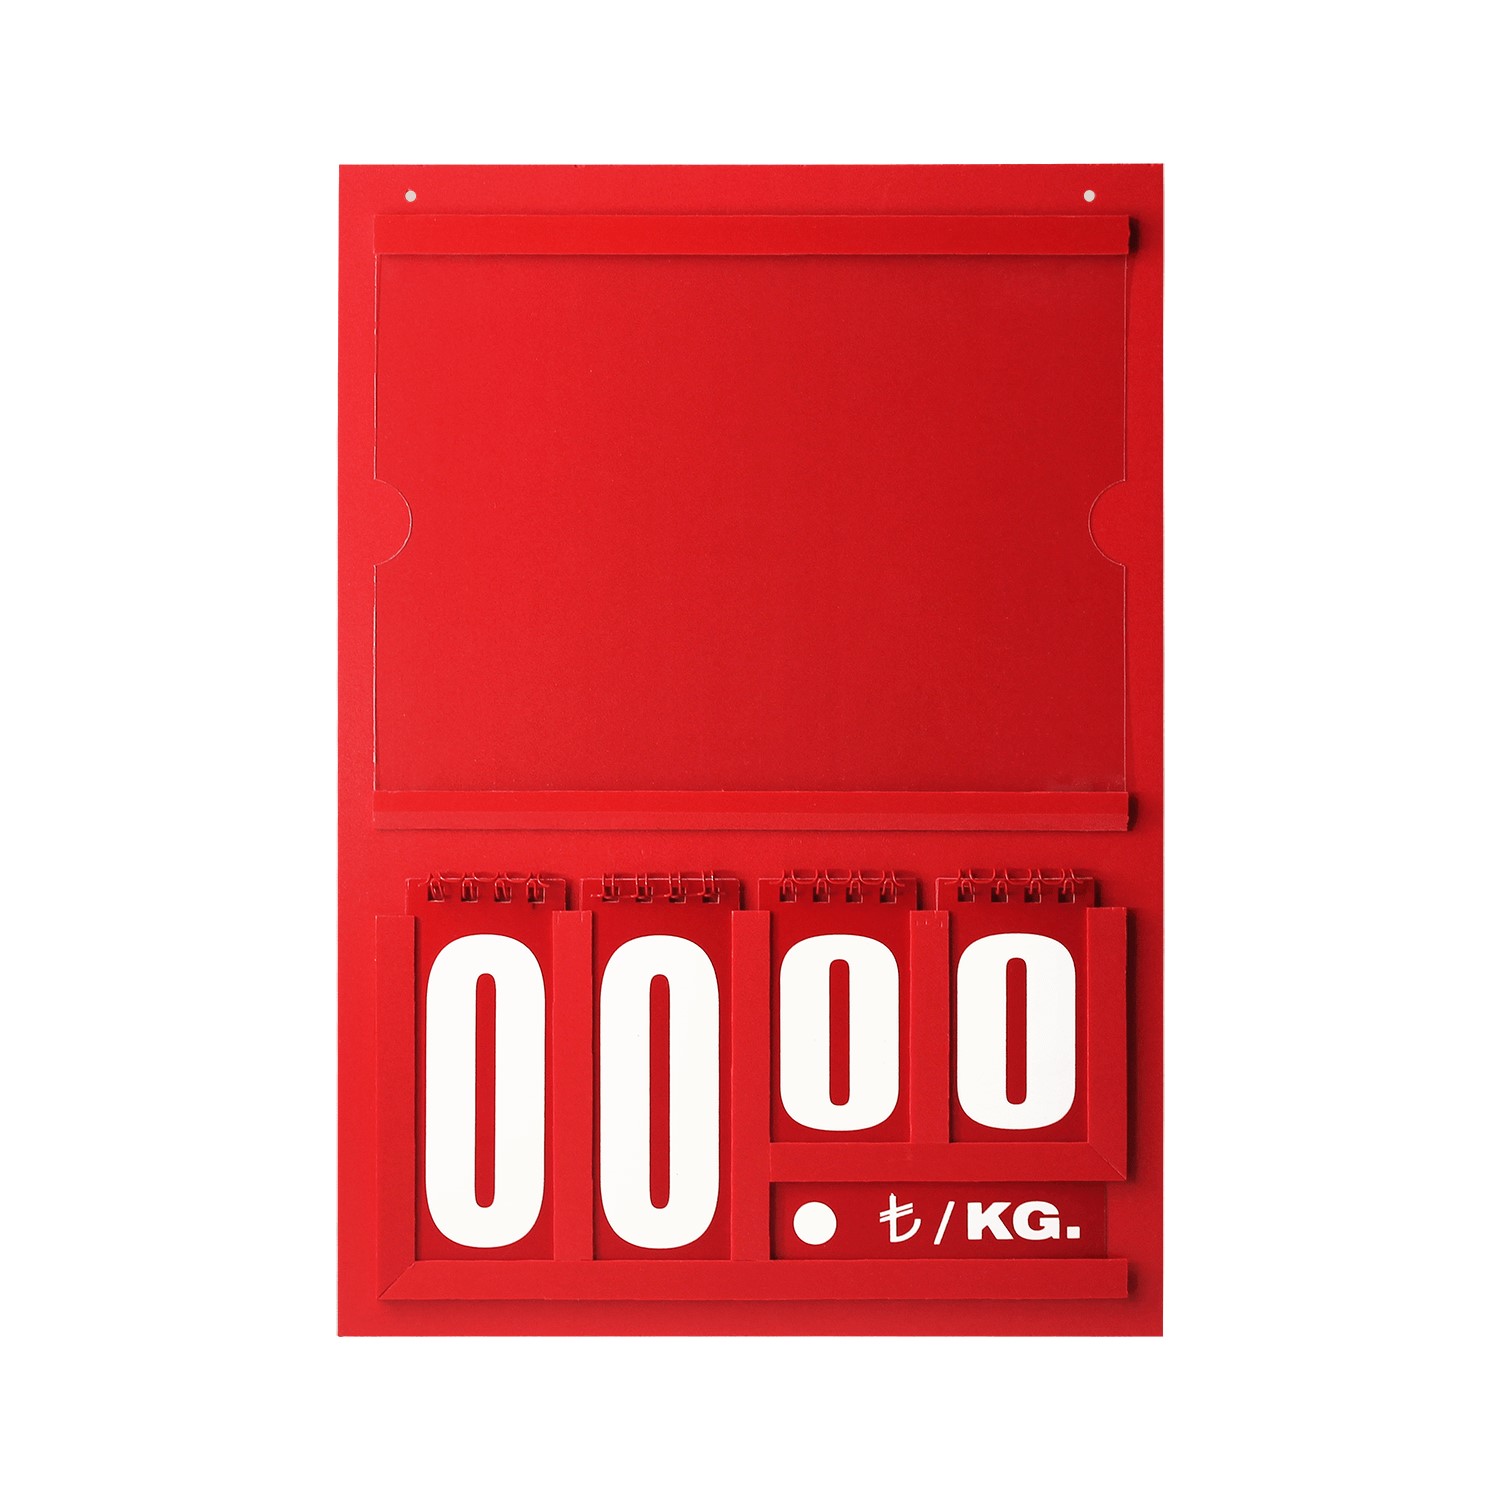 Resimli Manav Etiketi Maxi Çift Taraflı 21x30 cm Kırmızı -1.jpg (184 KB)